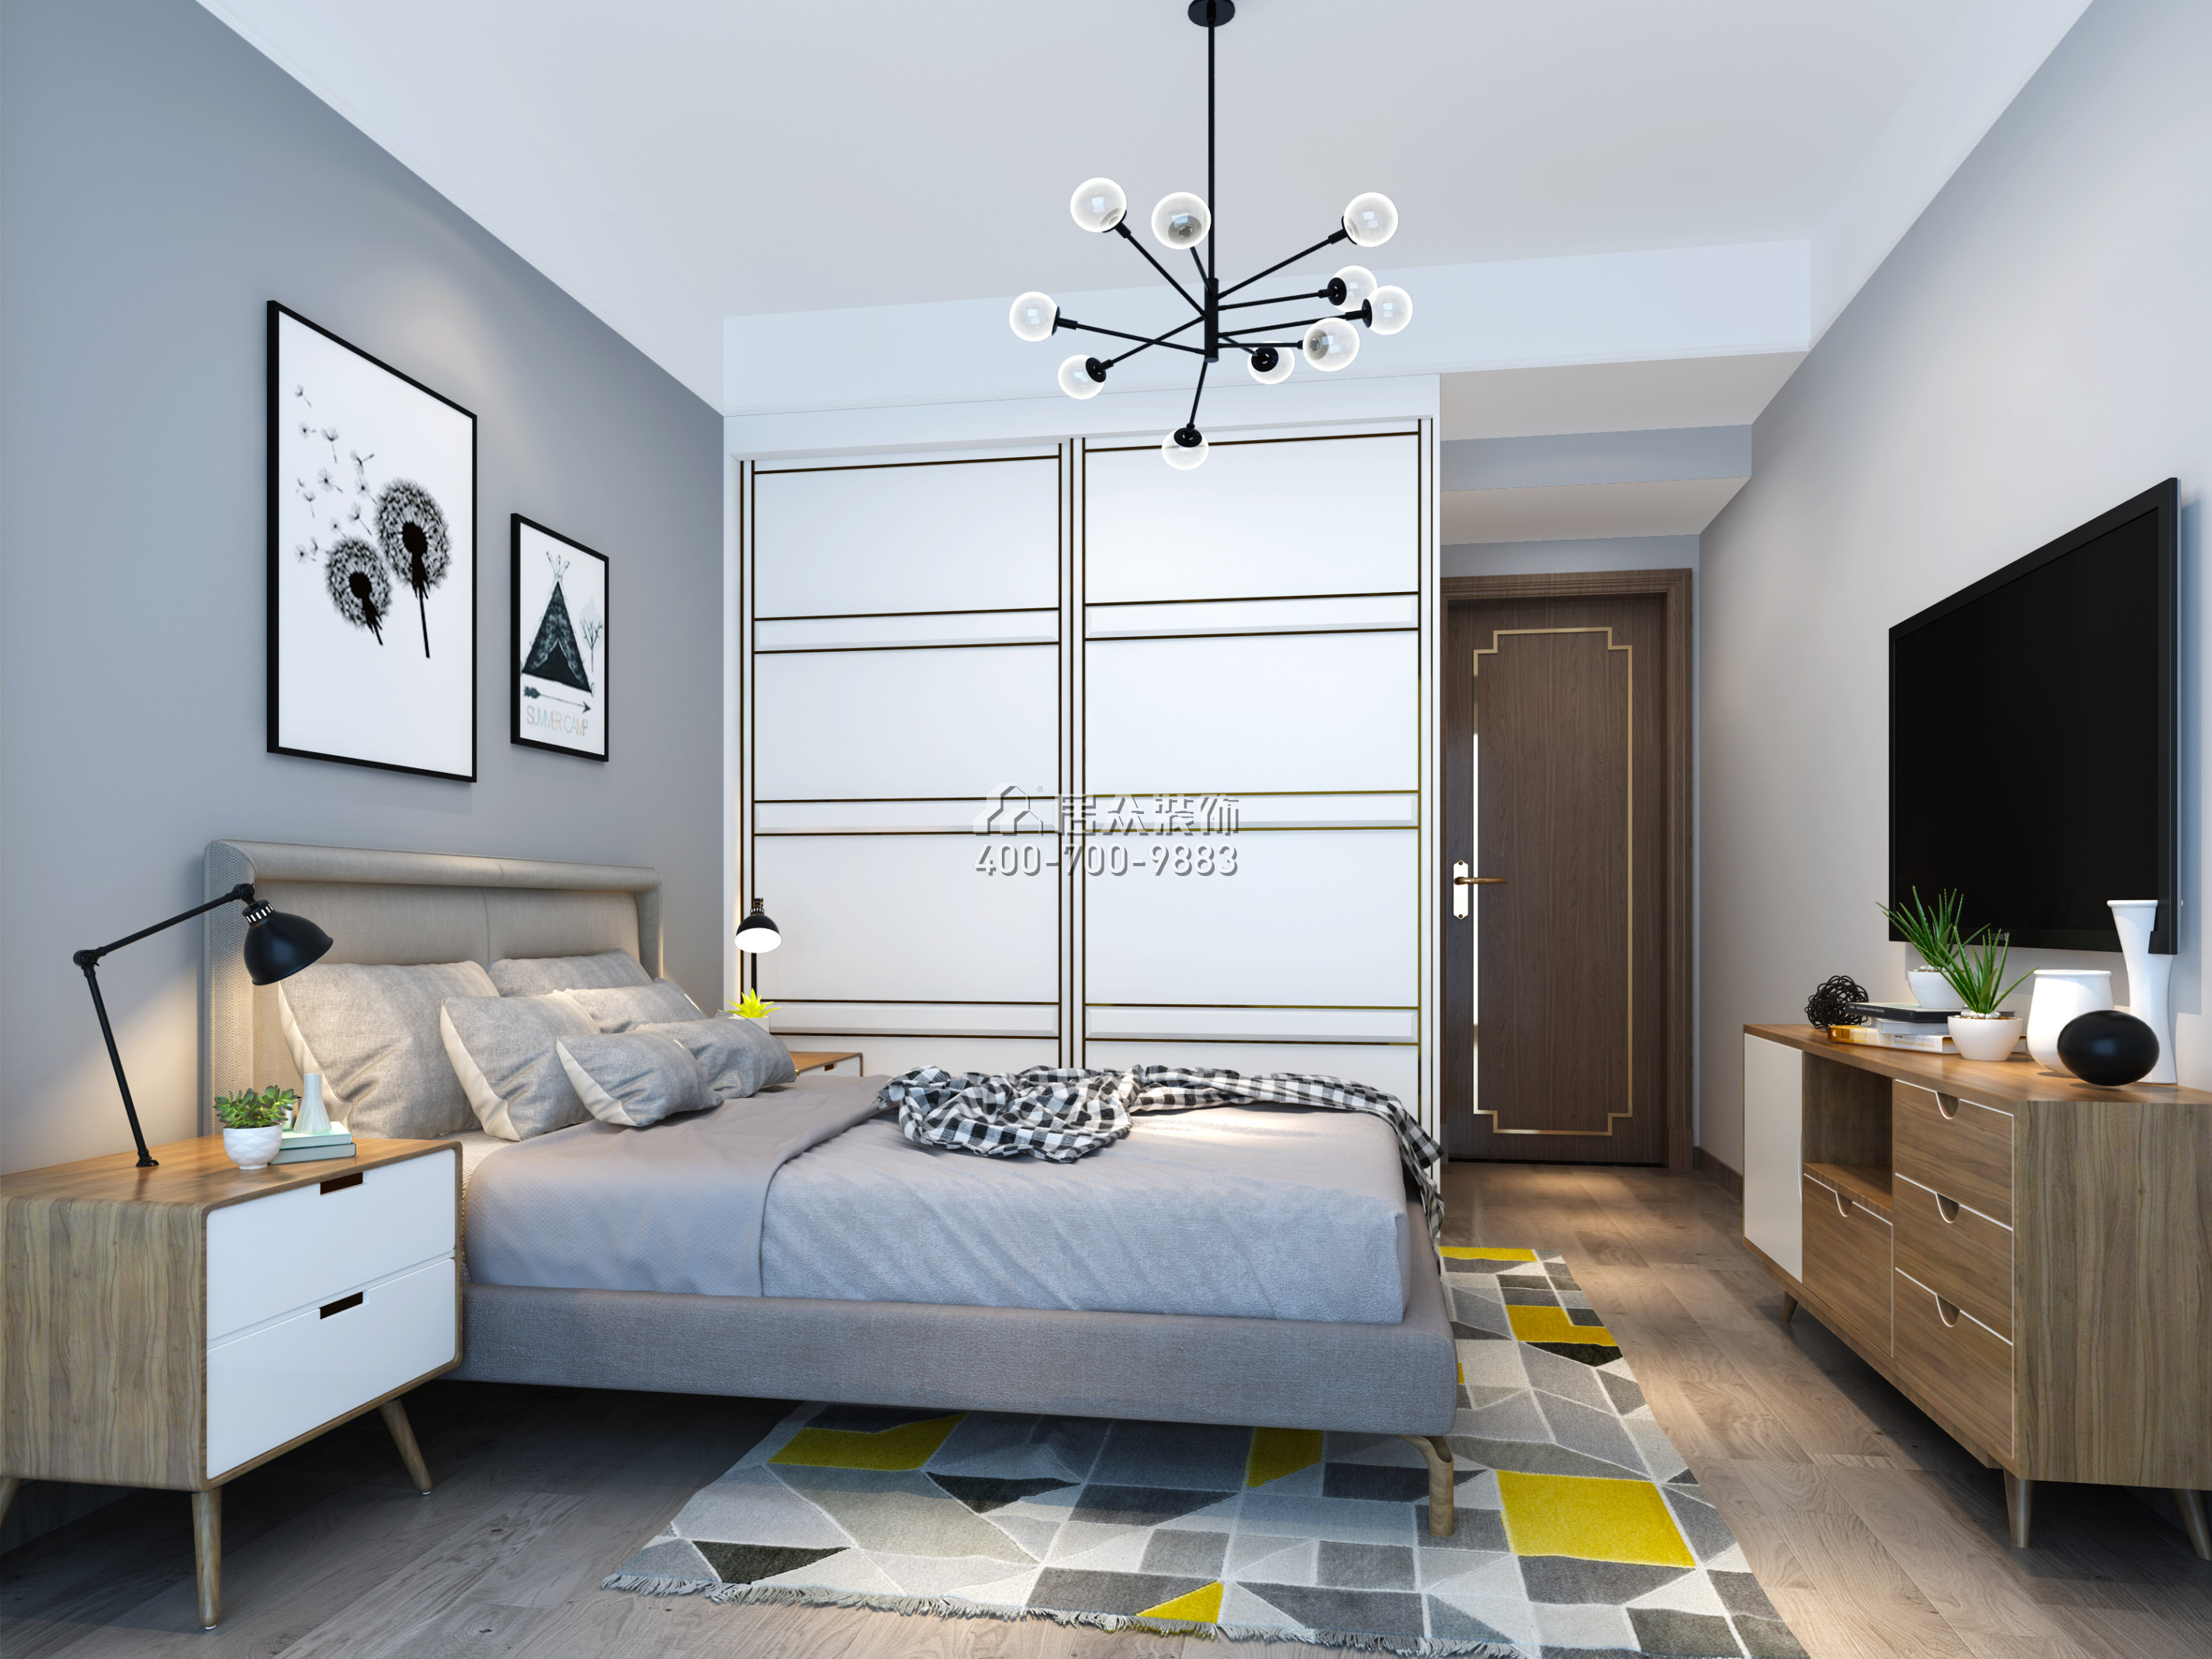 联投东方华府二期105平方米中式风格平层户型卧室装修效果图